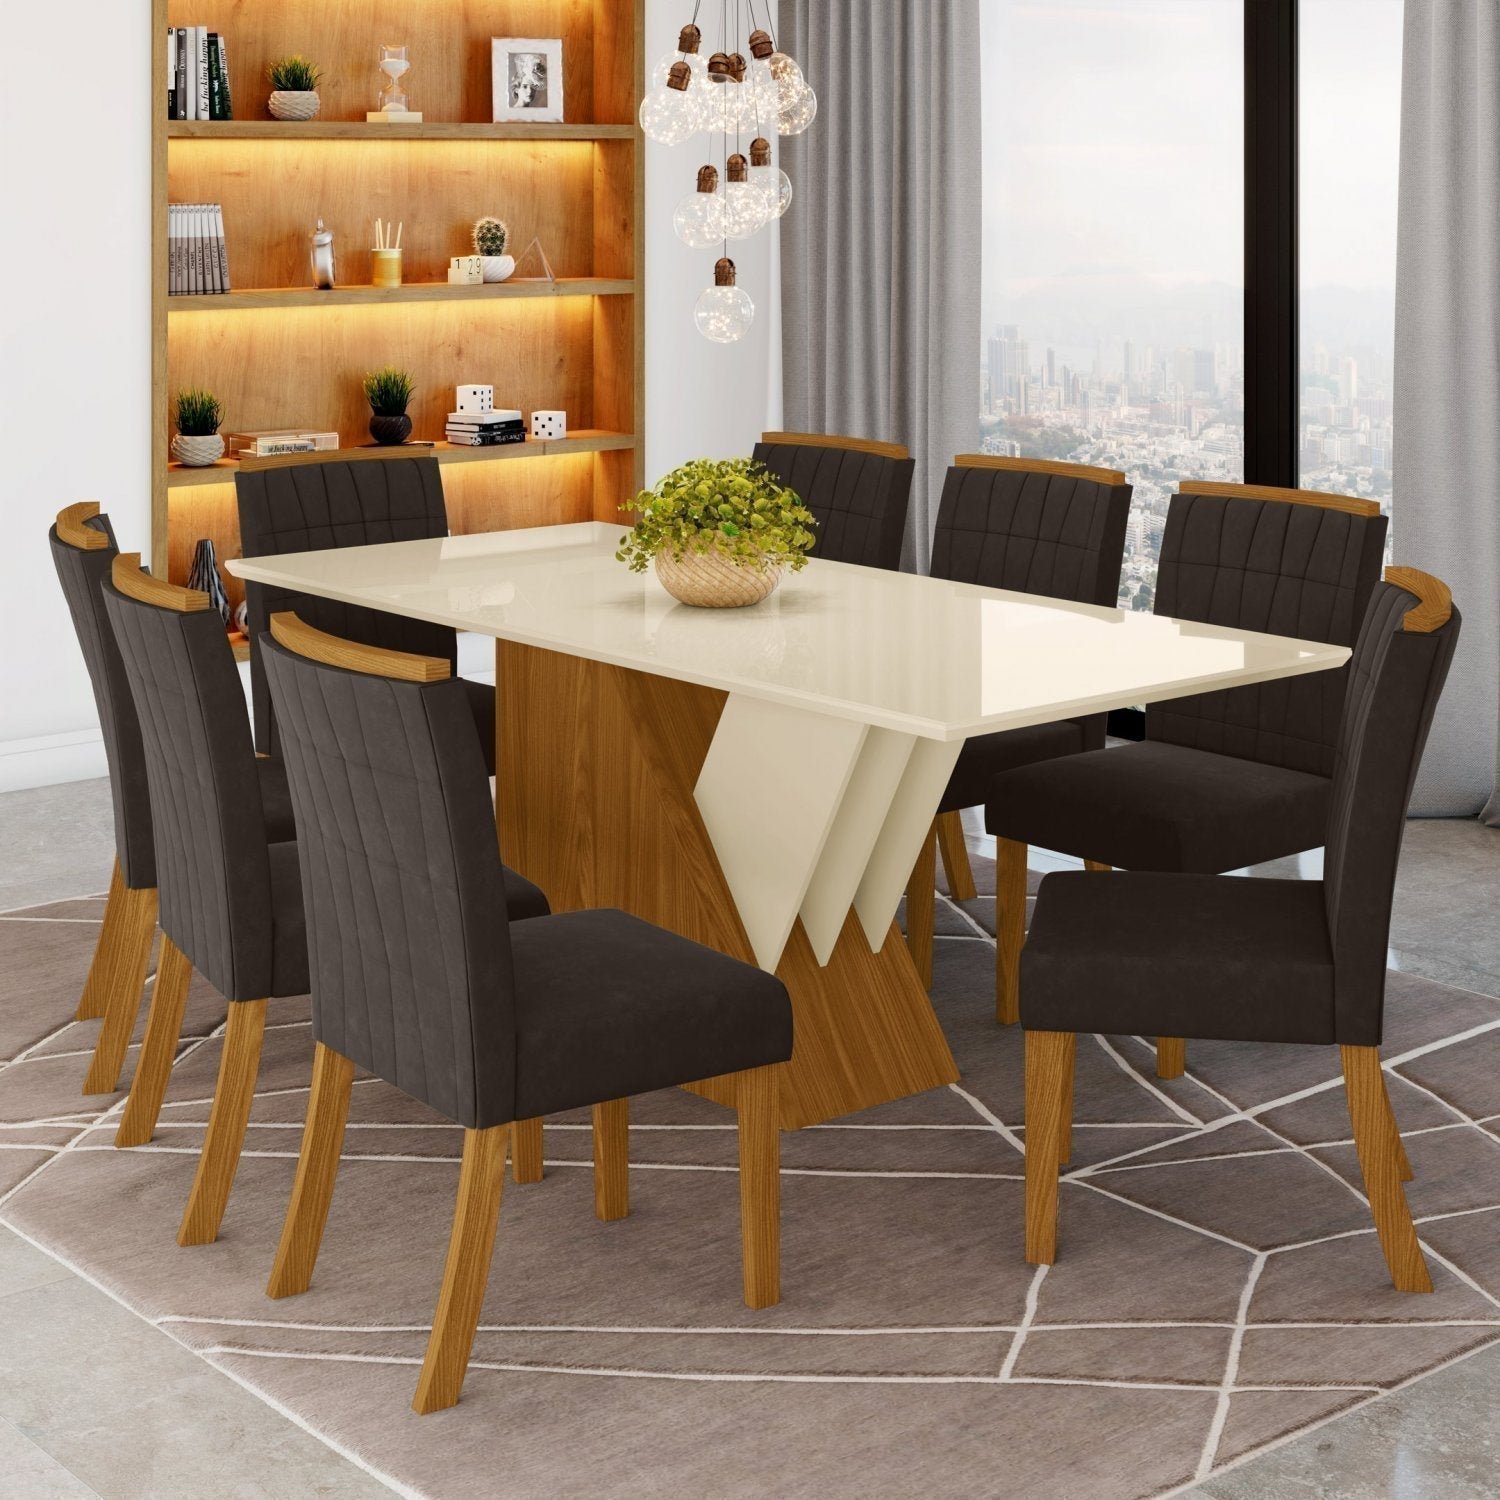 Conjunto Sala de Jantar Mesa Tampo MDF e Vidro 8 Cadeiras Itália Espresso Móveis